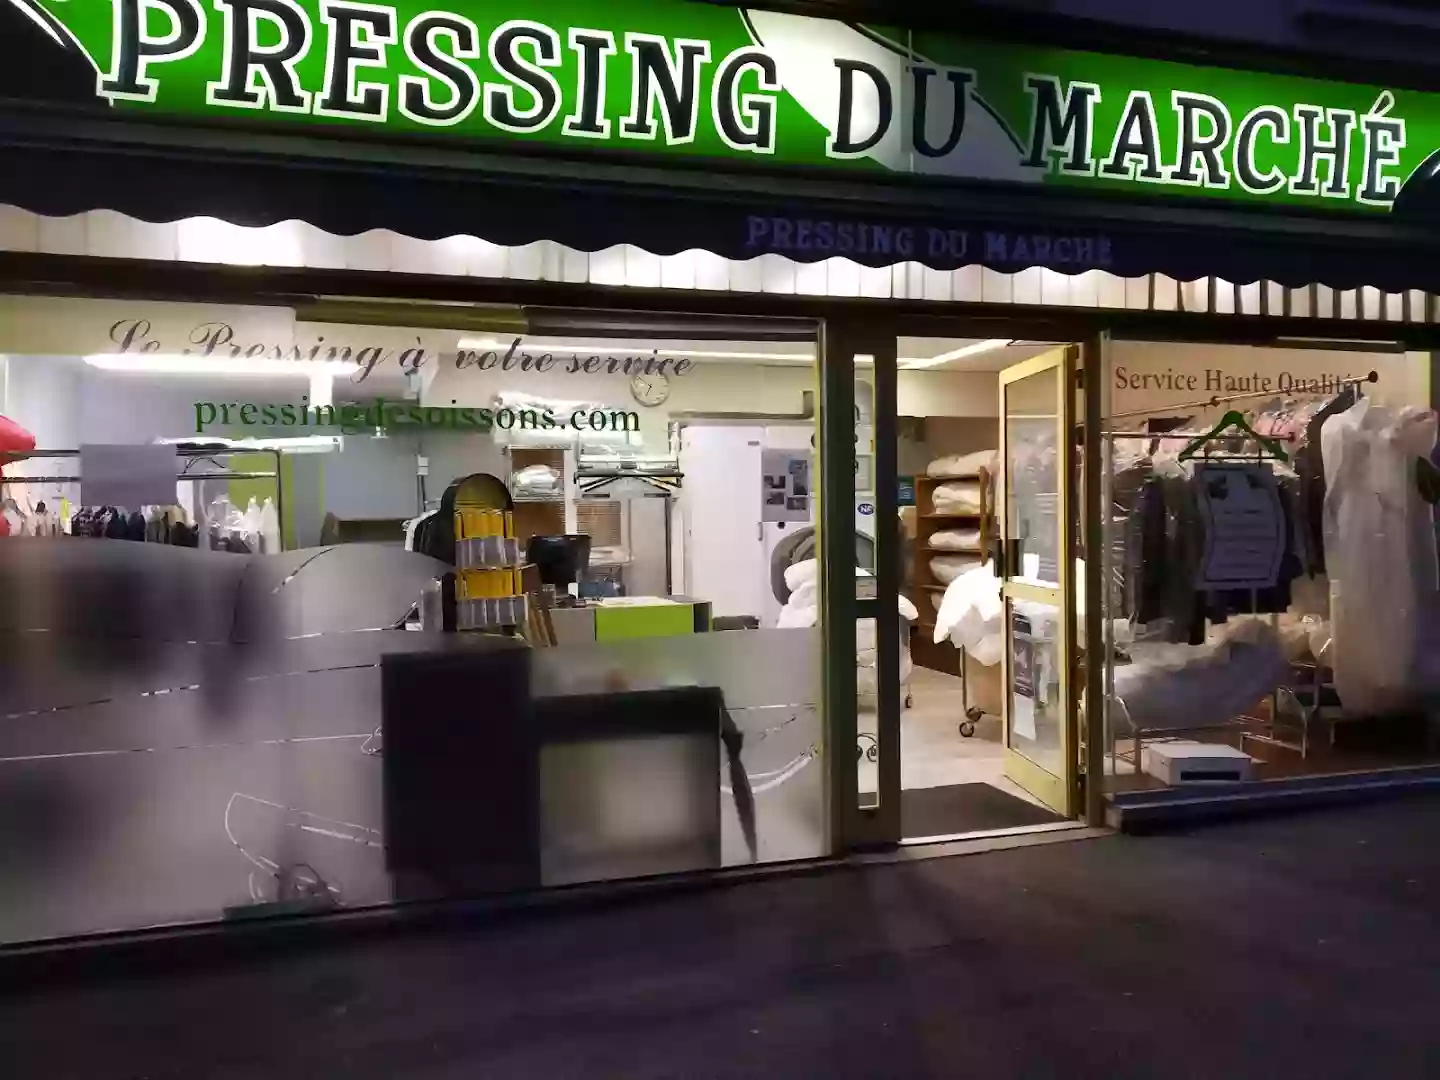 Pressing Du Marché